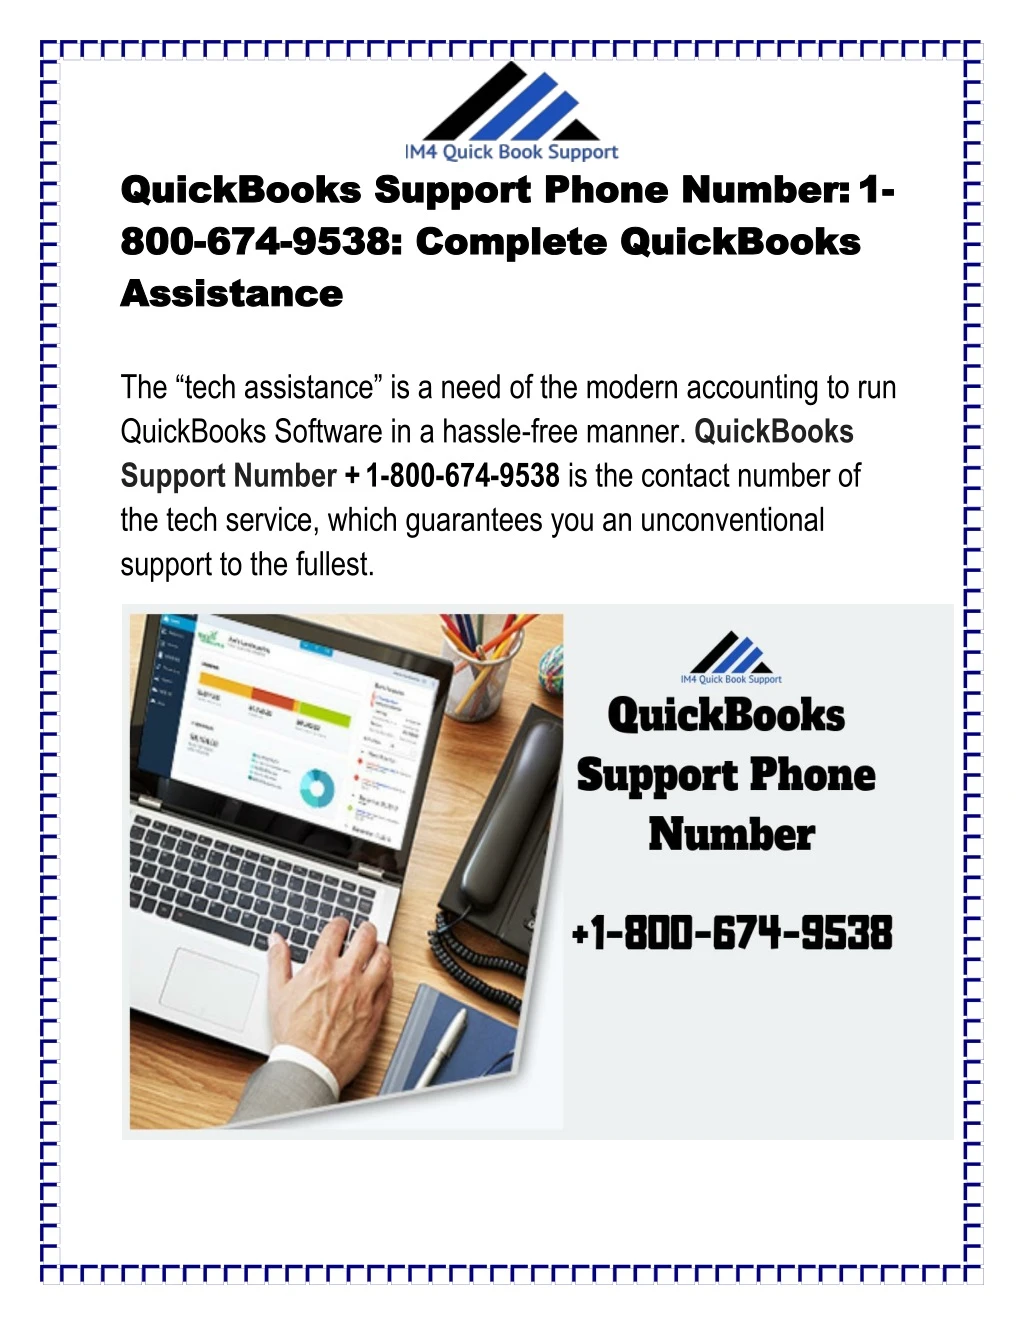 quickbooks support phone number quickbooks